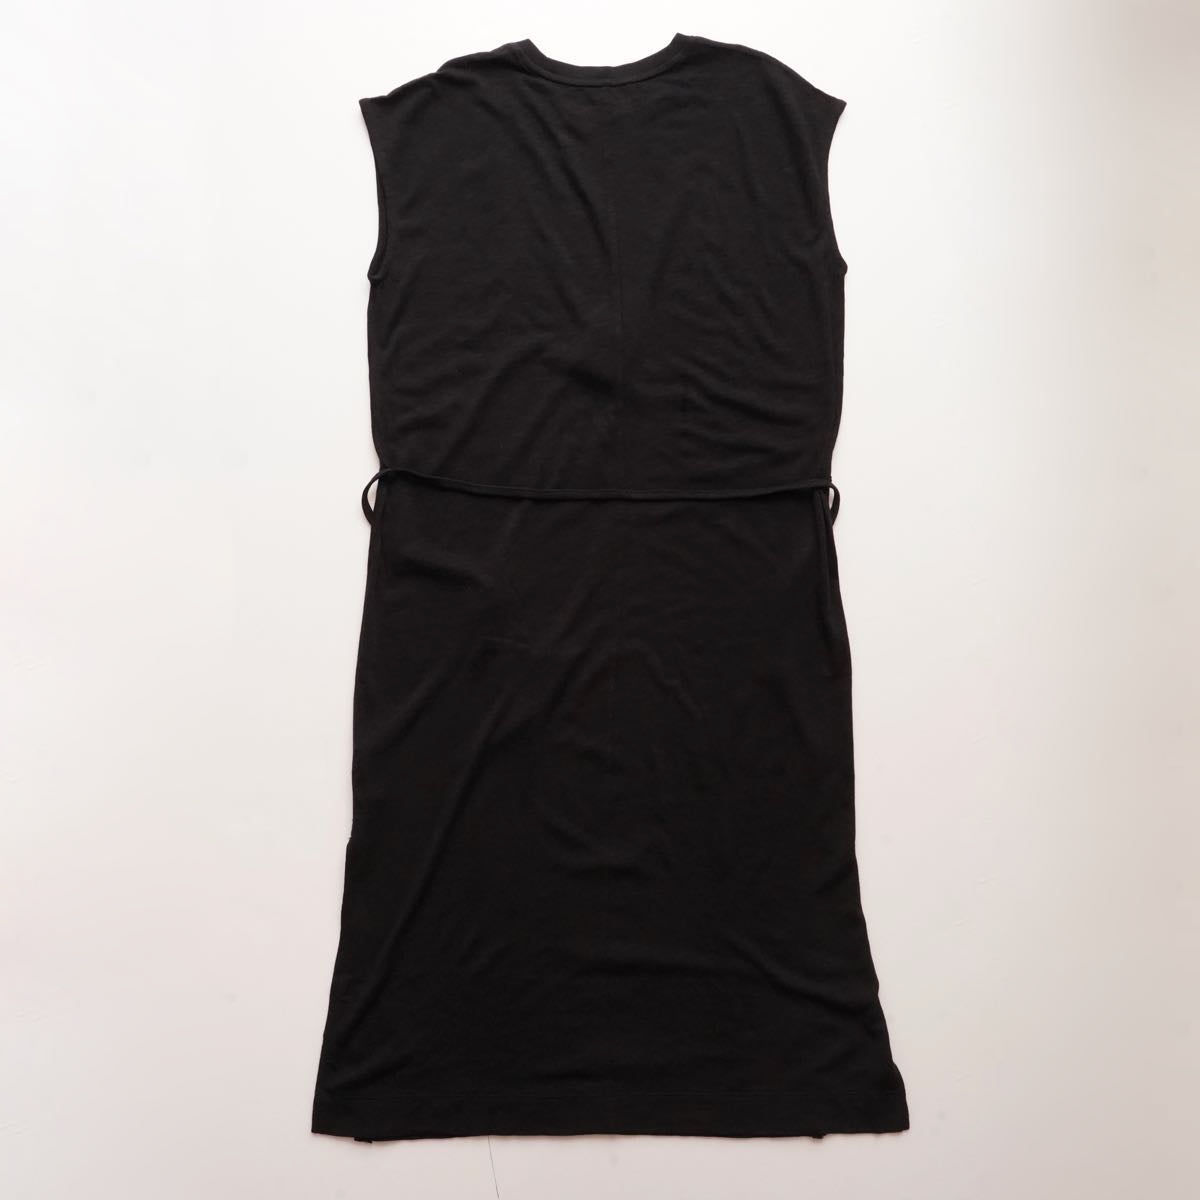 スプレンディッド  ブラック フレンチスリーブ ロングドレス ワンピース SPLENDID BLACK FRENCH-SLEEVE DRESS WOMENS